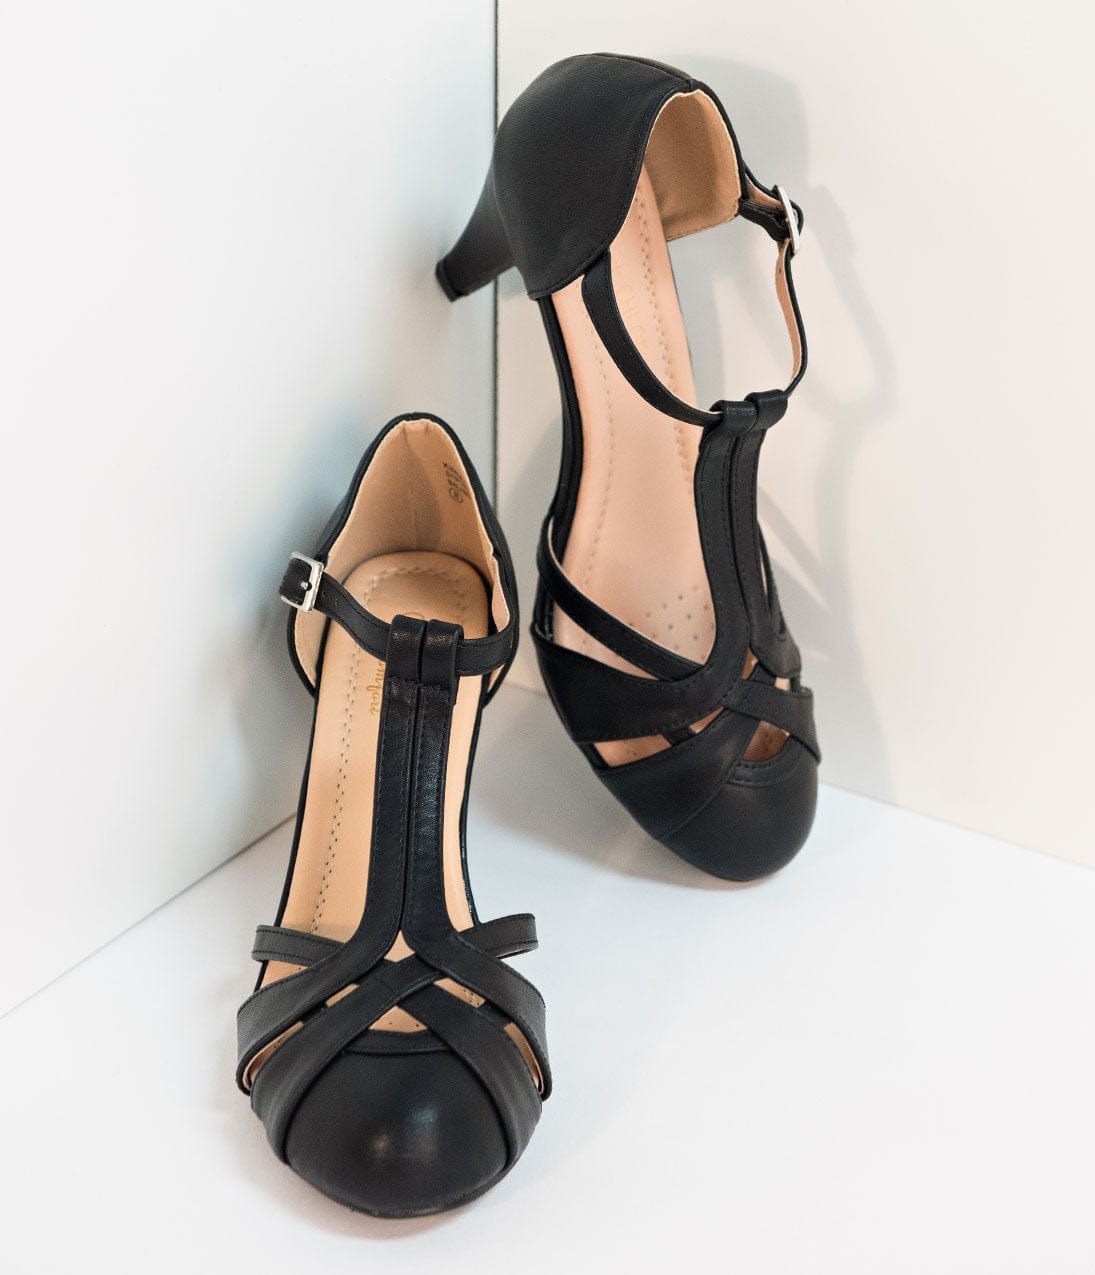 vintage style heels uk